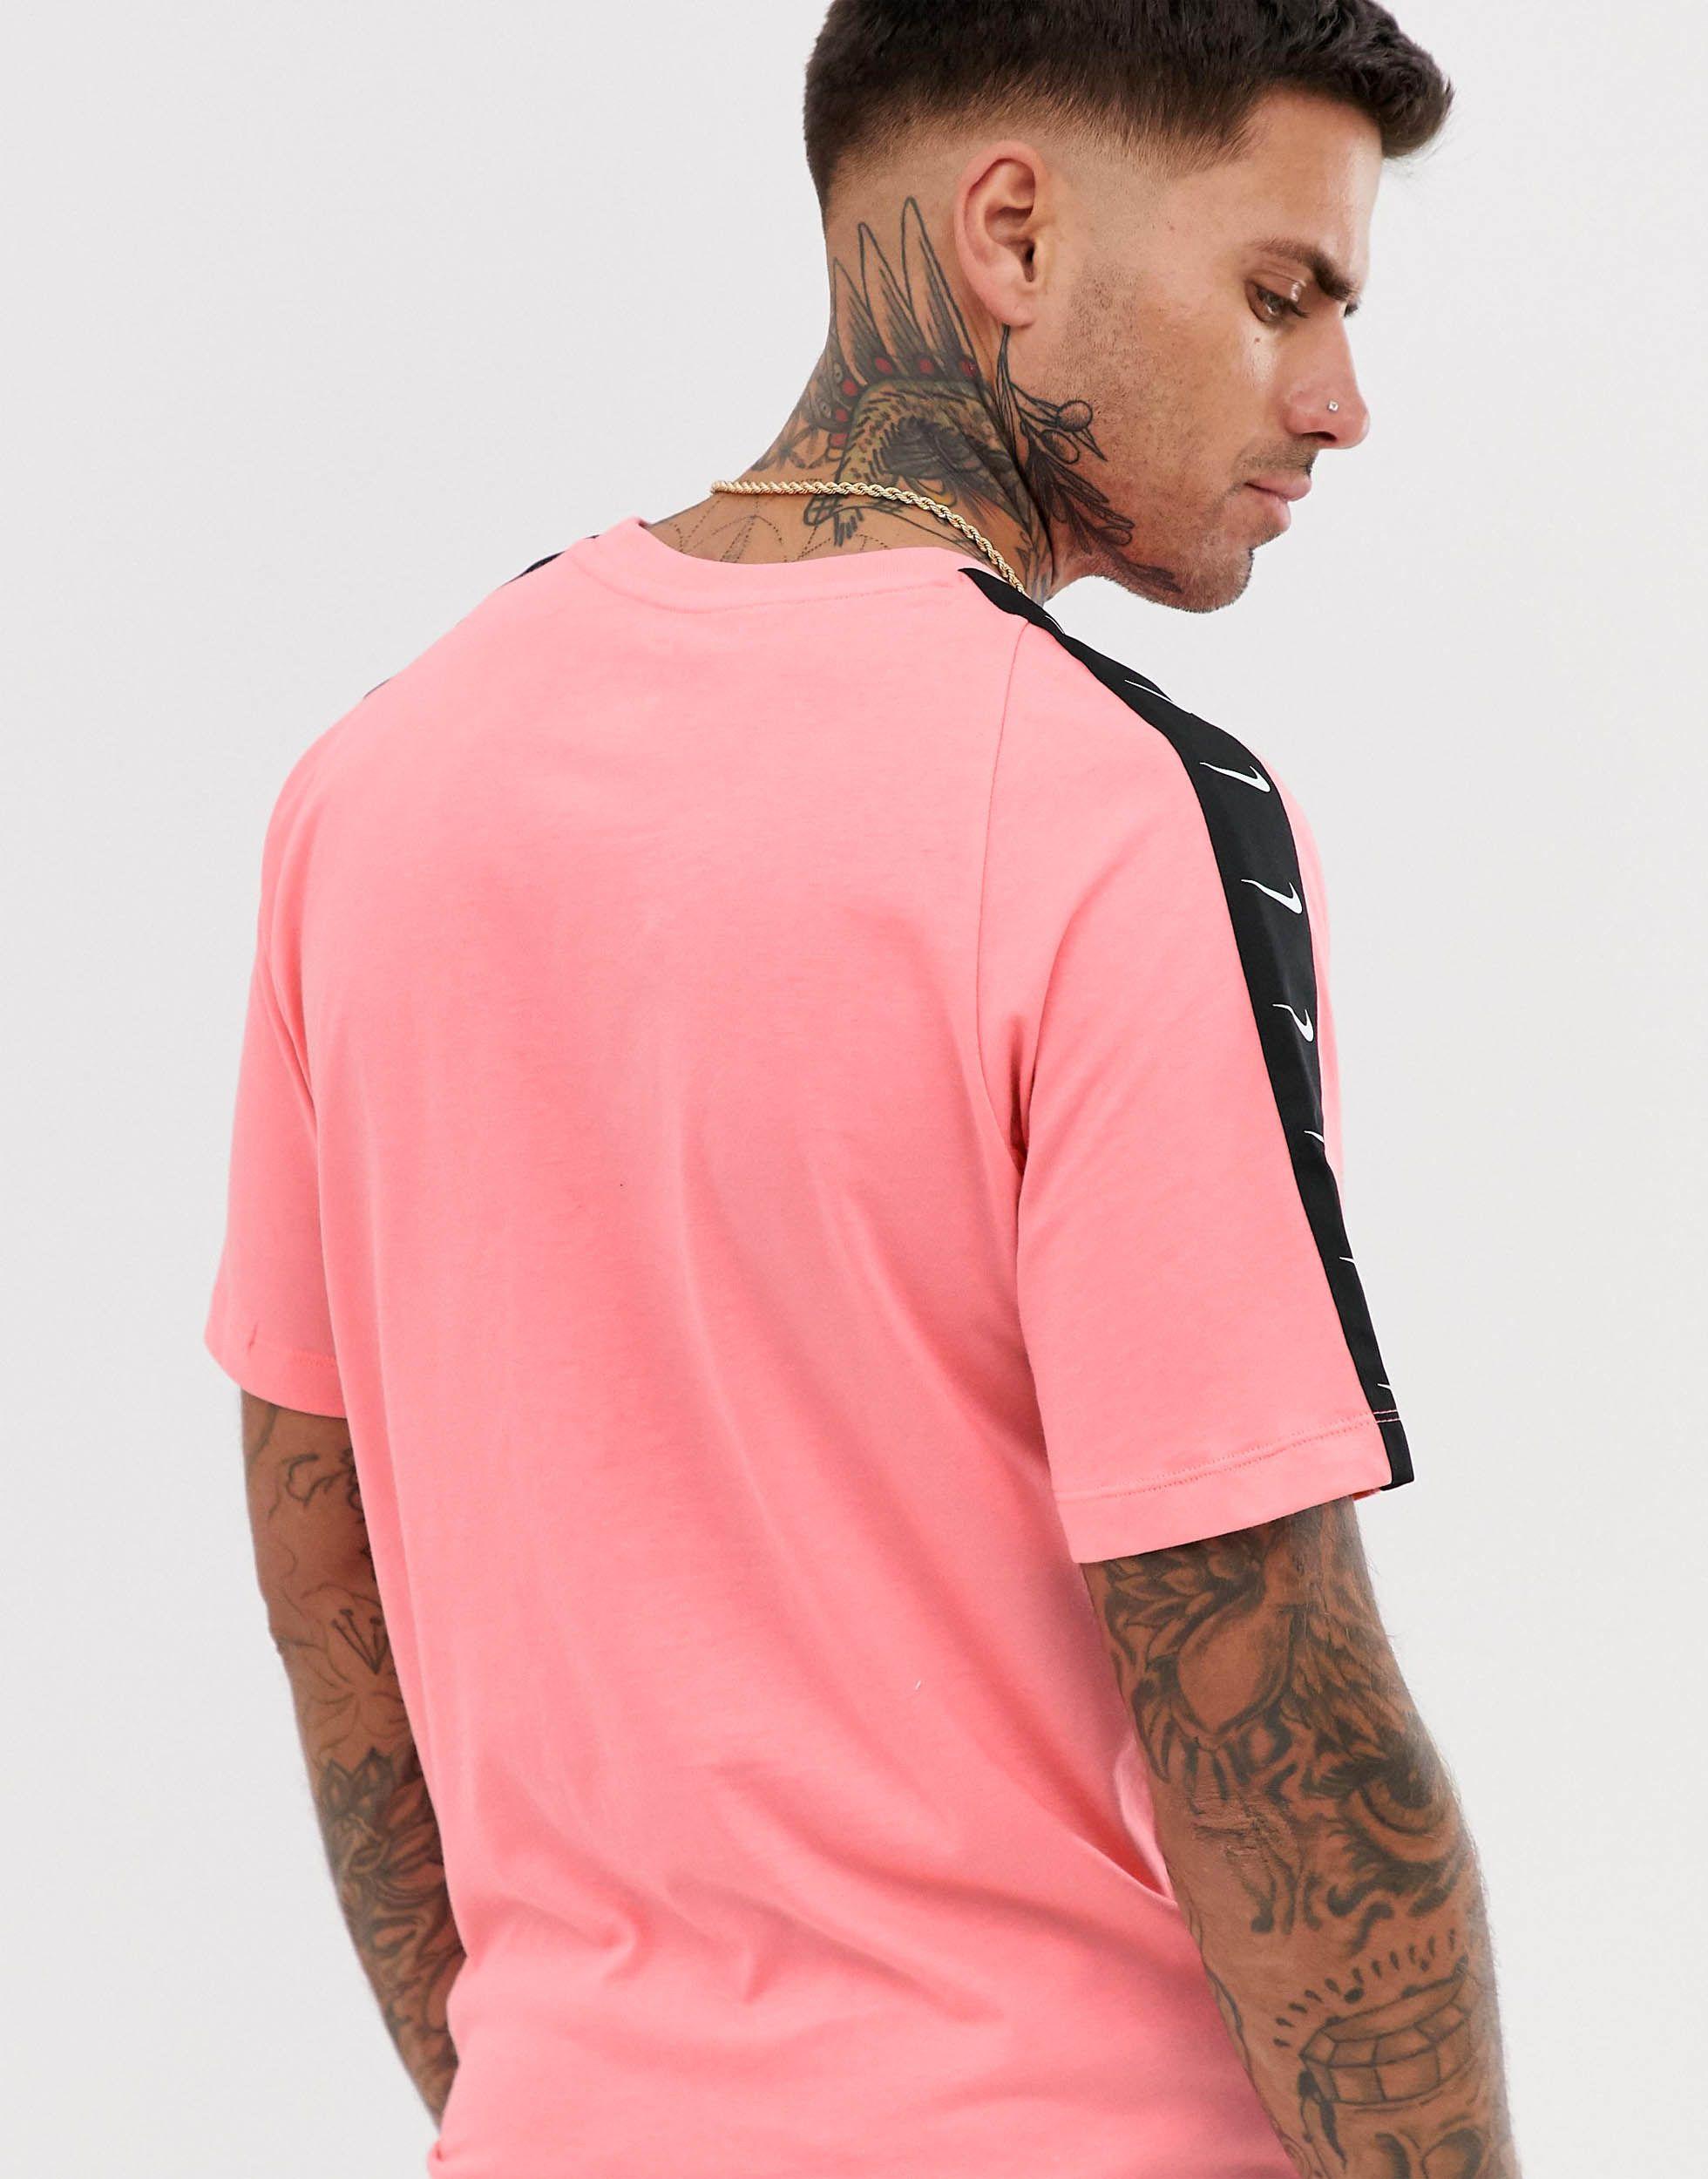 Camiseta rosa con cinta del logo Nike de hombre de color Rosa | Lyst